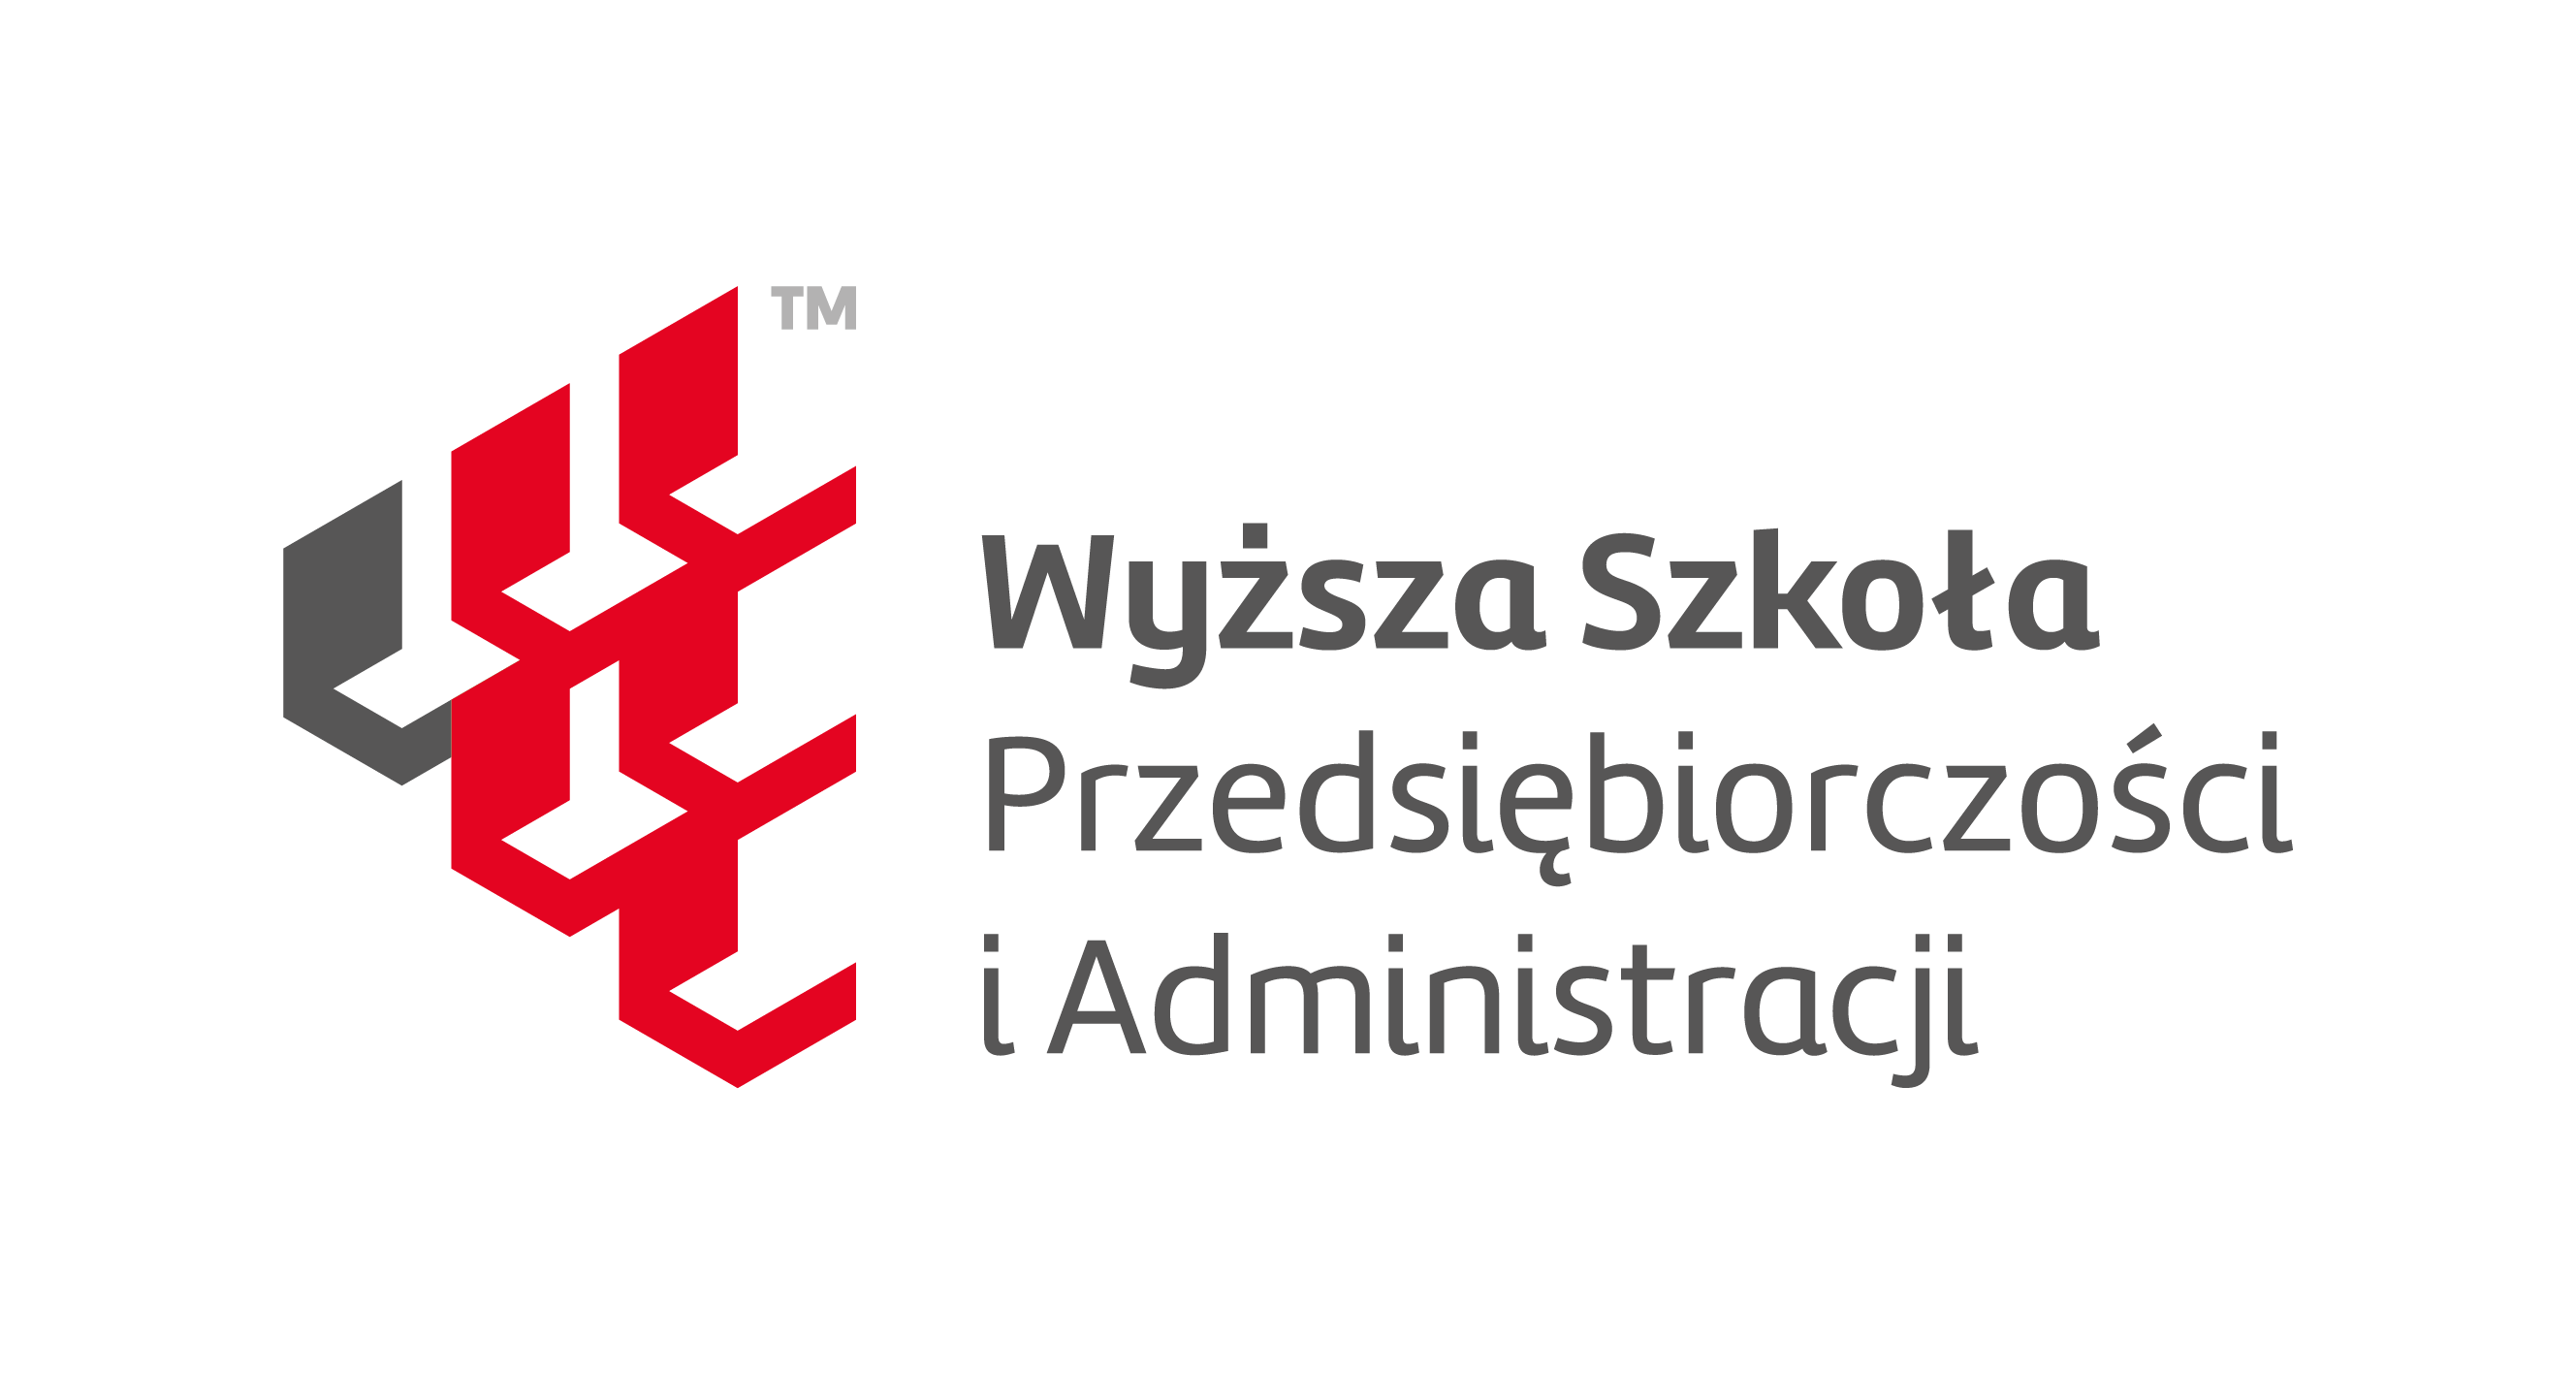 Wyższa Szkoła Przedsiębiorczości i Administracji w Lublinie